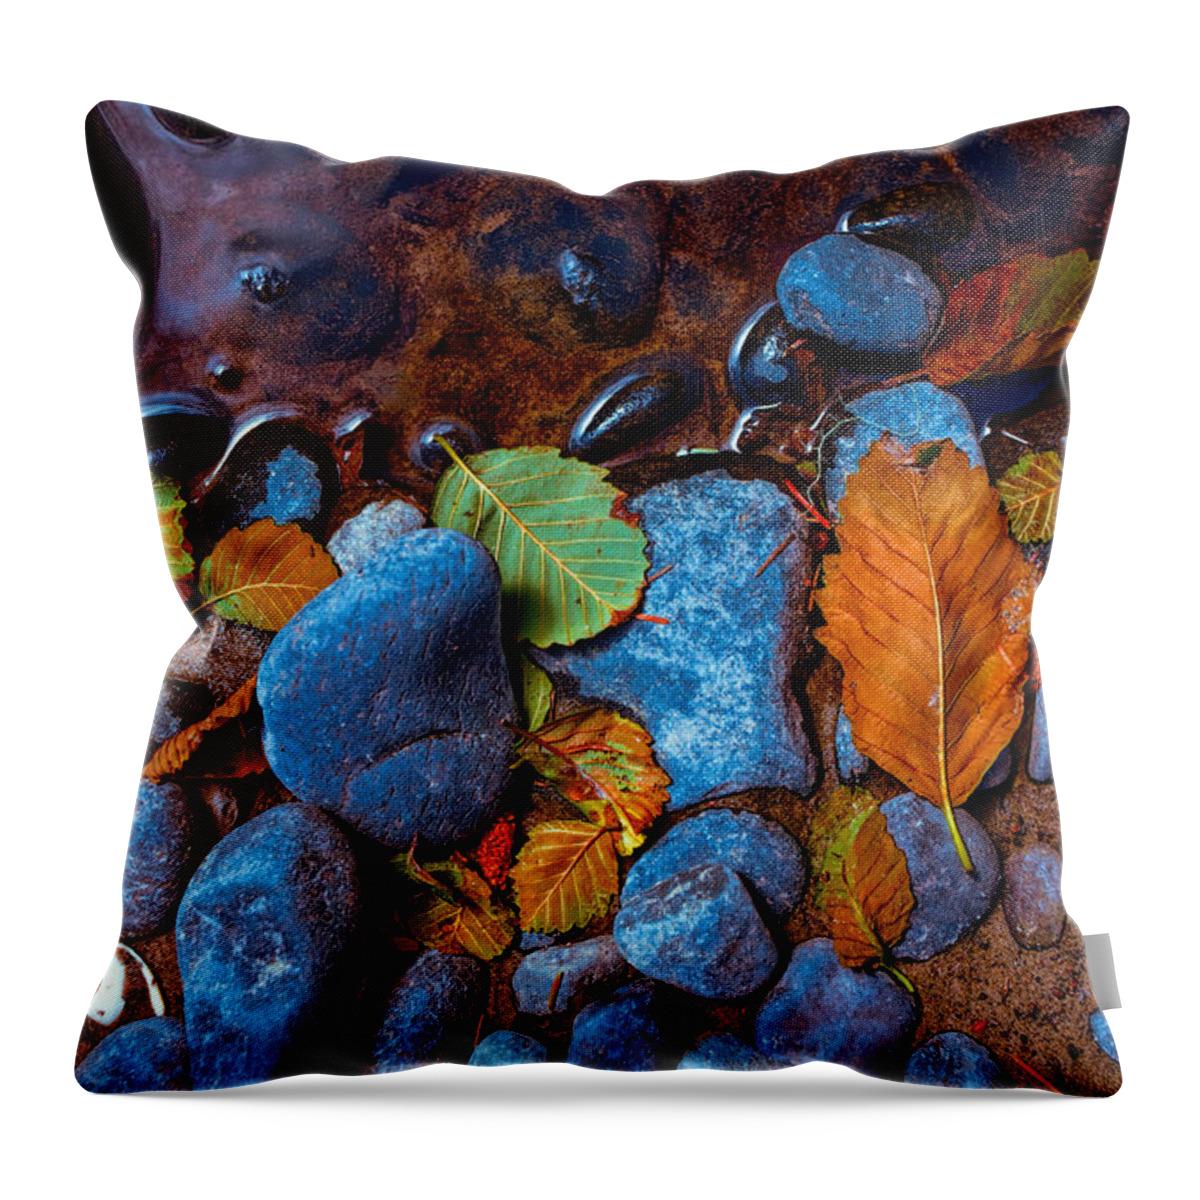 Beach Throw Pillow featuring the photograph Colorful Beach Debris by Bonnie Bruno